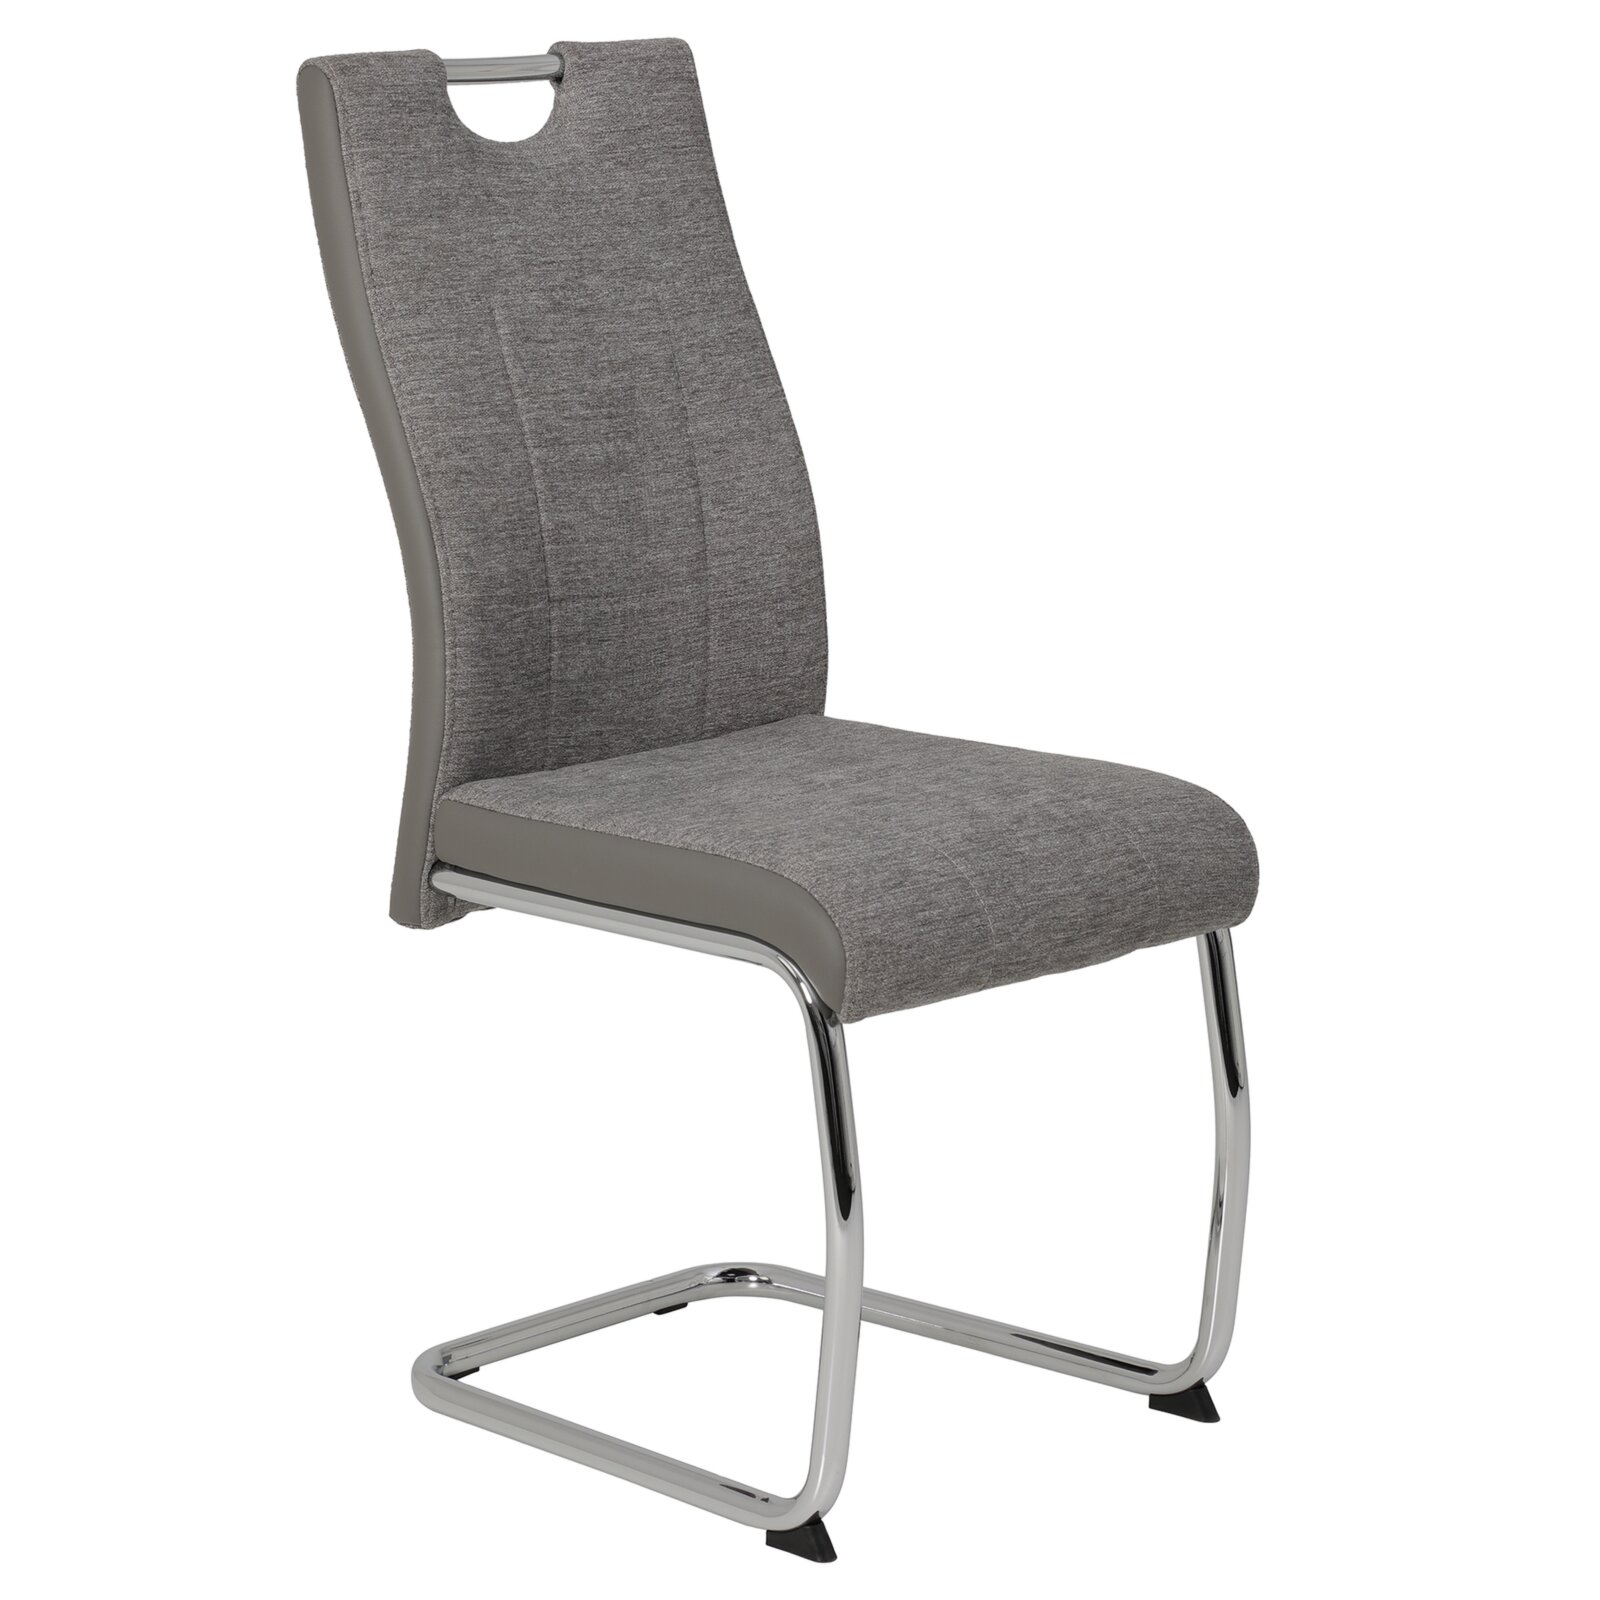 4-teiliges Schwingstuhl-Set - grau - Webstoff | Online bei ROLLER kaufen